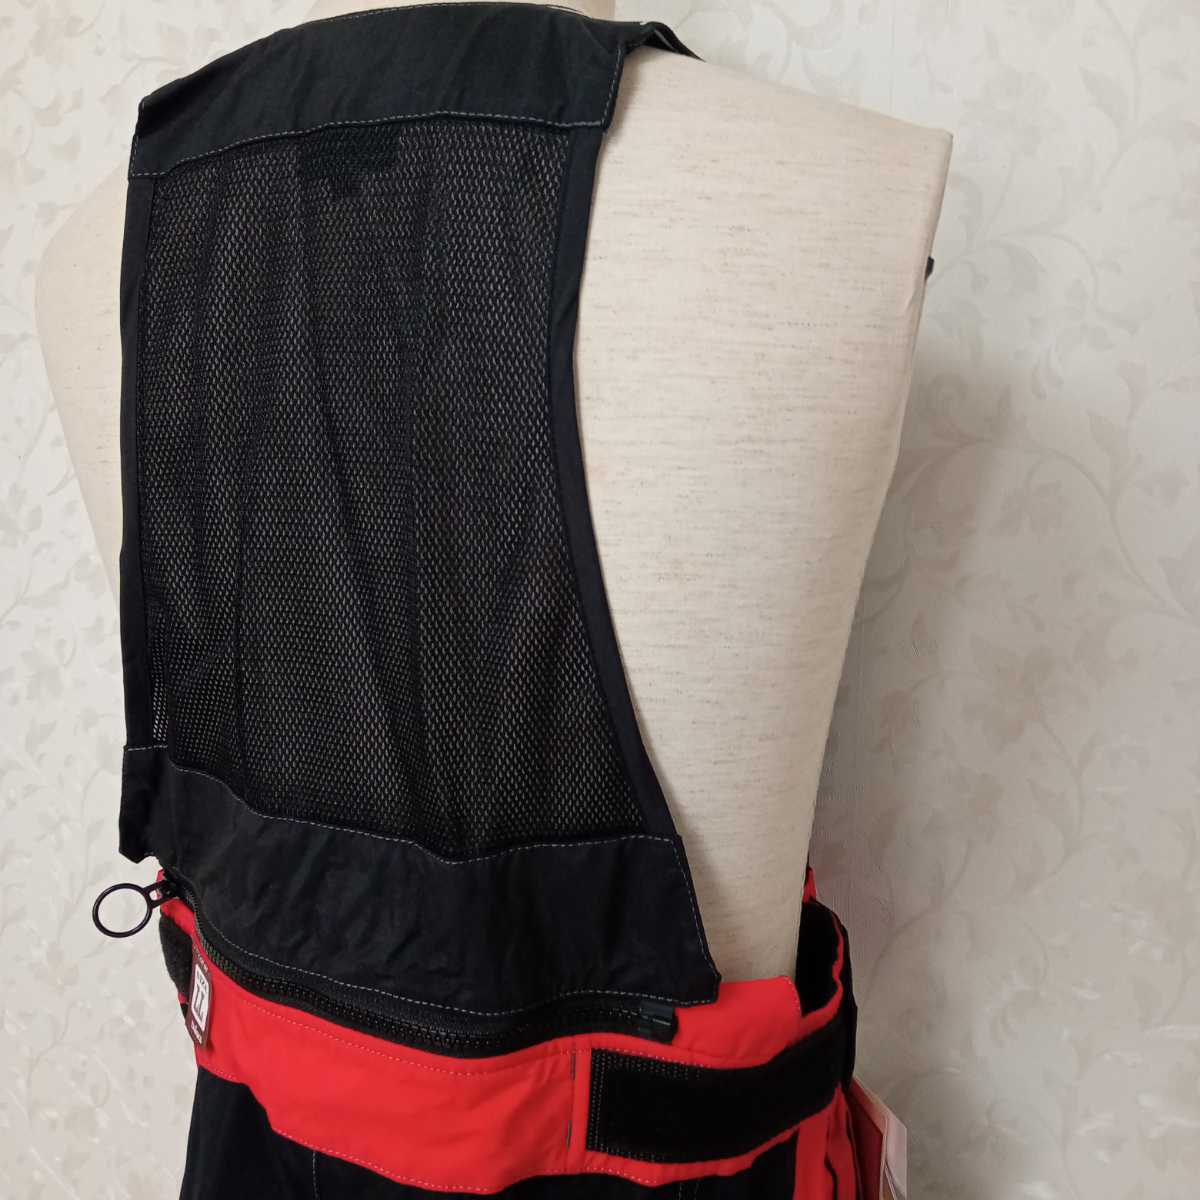  Daiwa PV Gore-Tex стрейч пригодный для любой погоды жакет & комбинезон брюки PR-1013J&1113P красный LL размер [ включая доставку цена ]